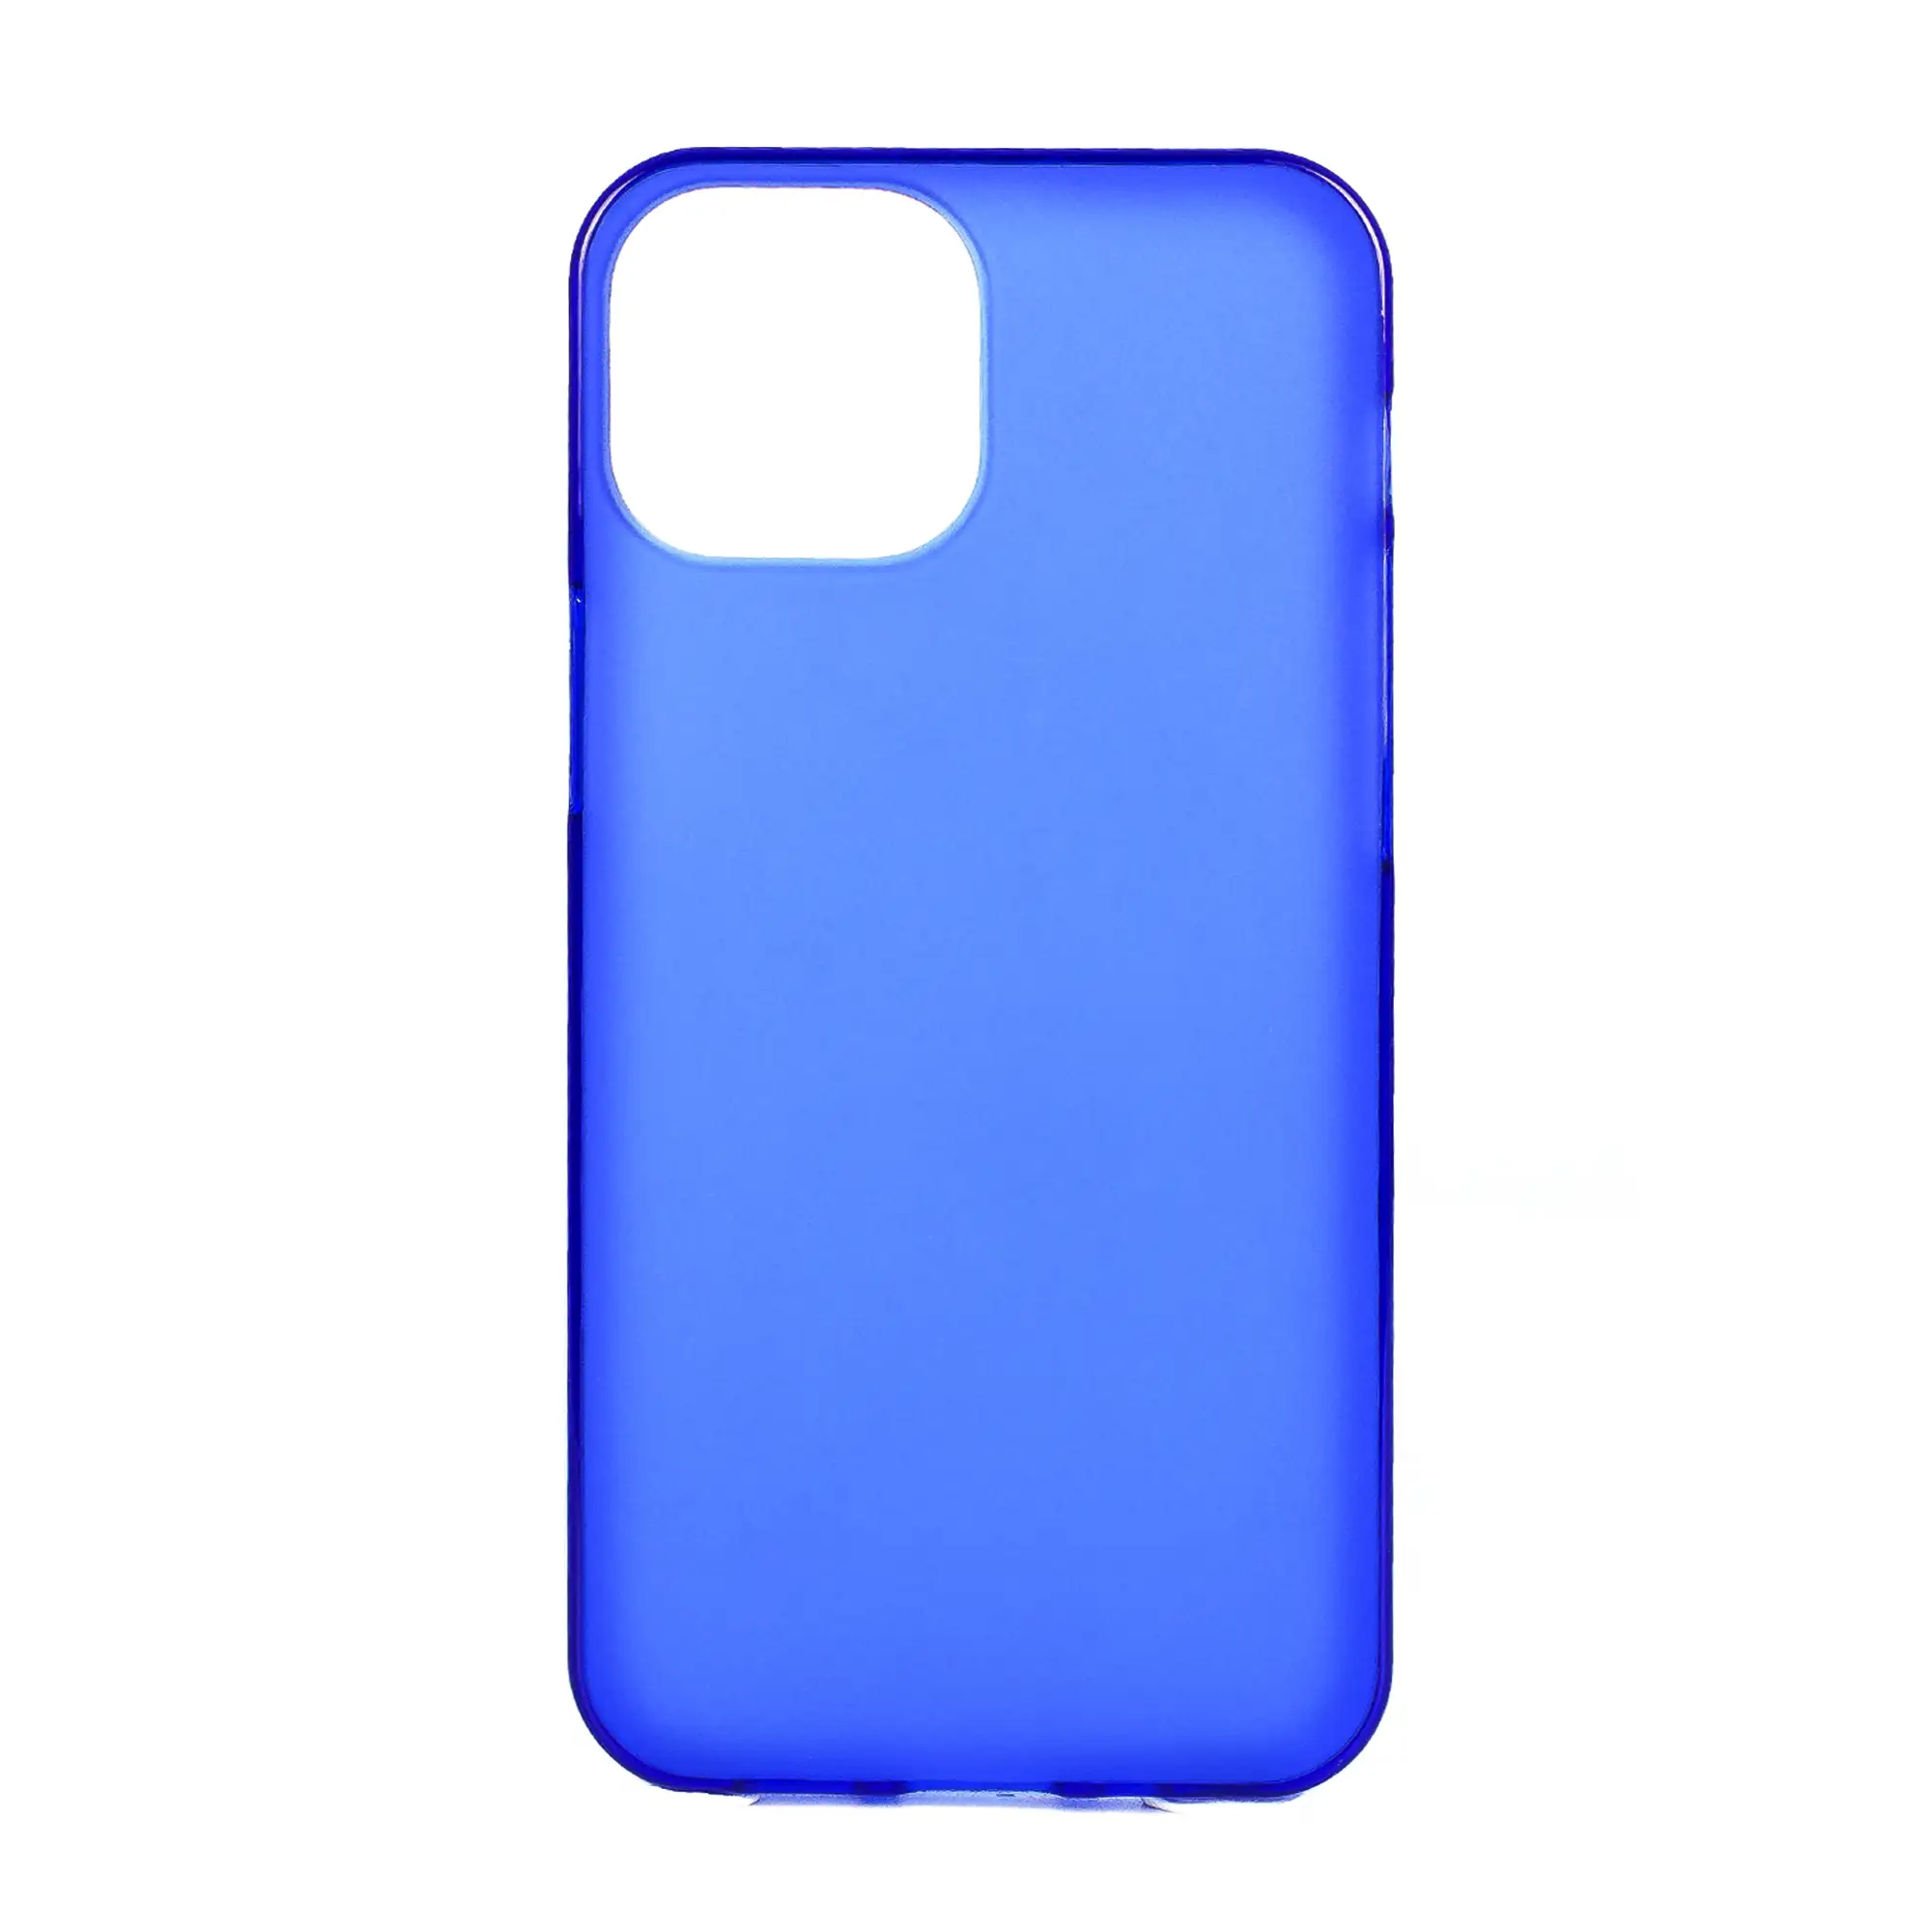 Carcasa de silicona para iPhone 13 Mini. Acabado semi transparente mate con bordes brillo.